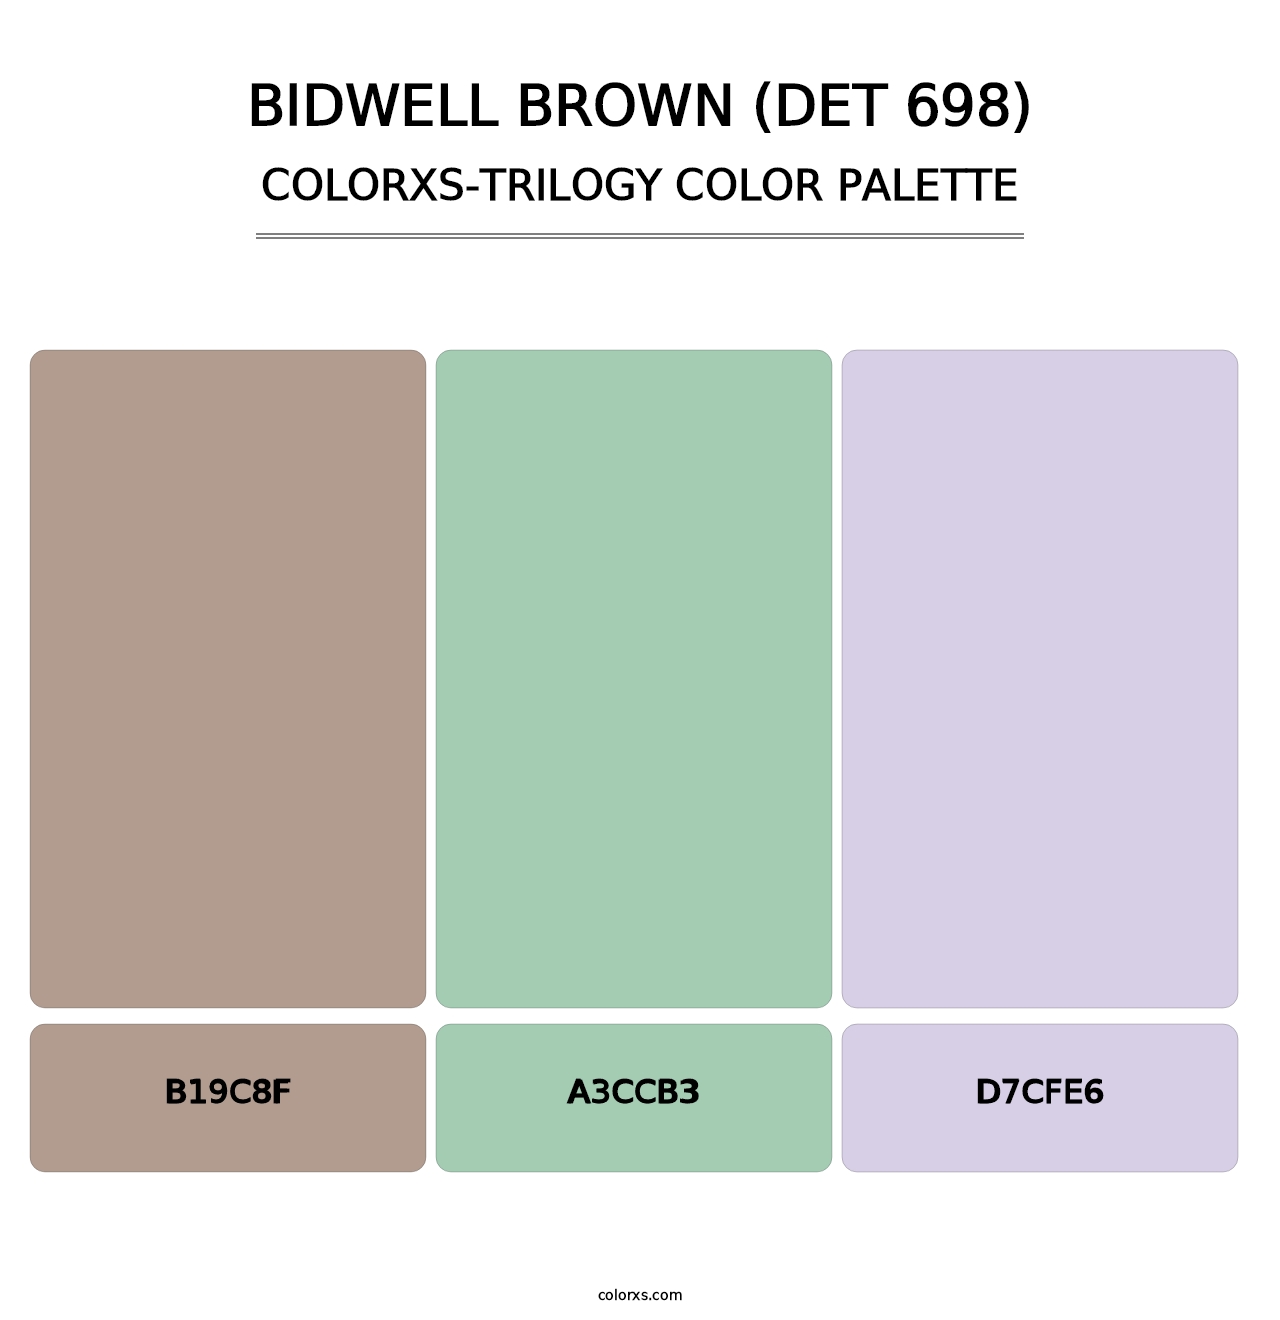 Bidwell Brown (DET 698) - Colorxs Trilogy Palette